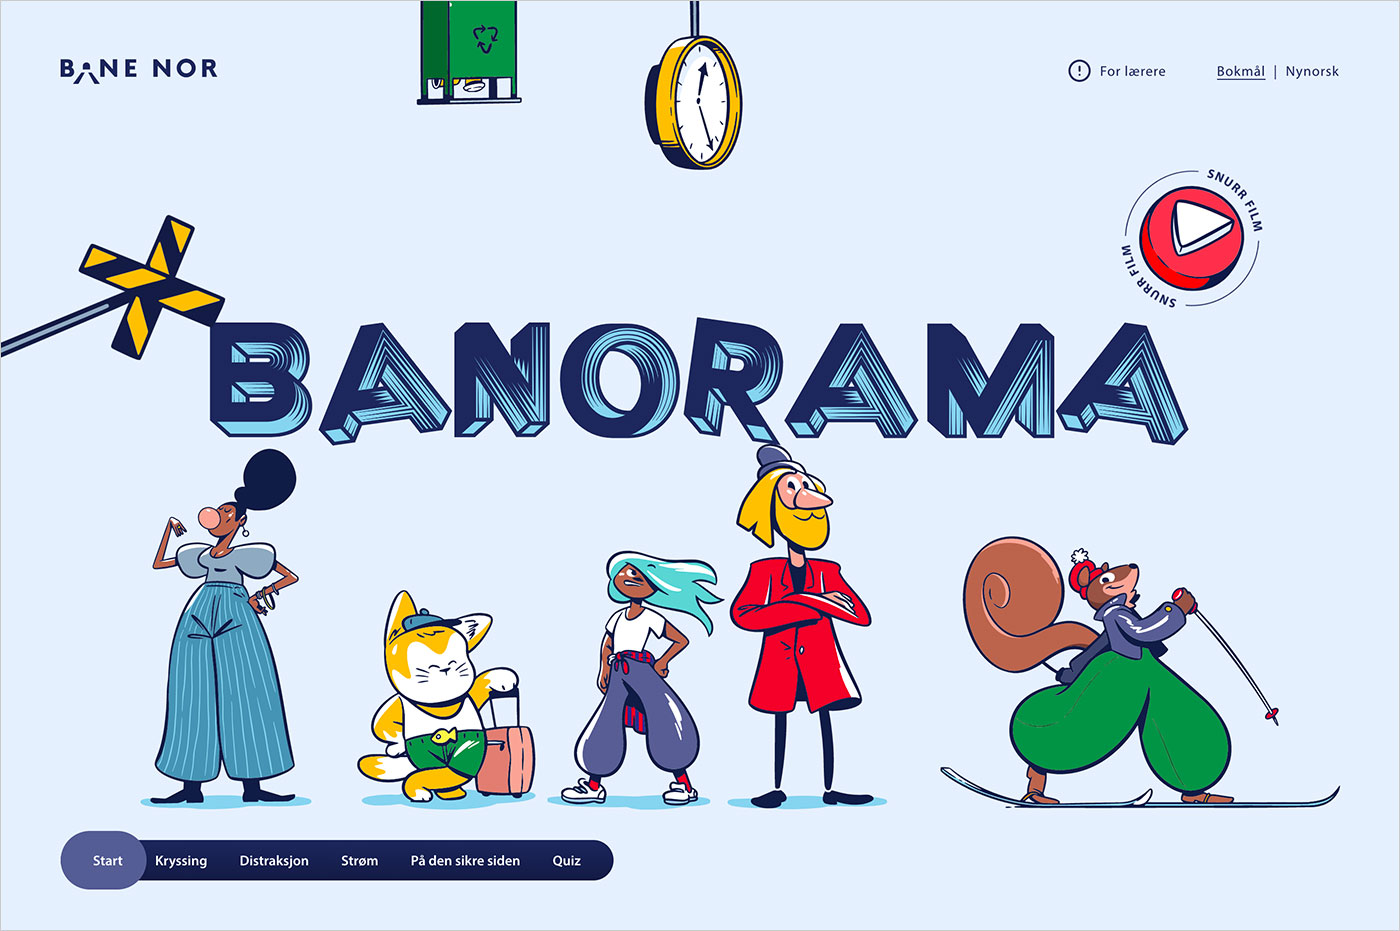 Banoramaウェブサイトの画面キャプチャ画像